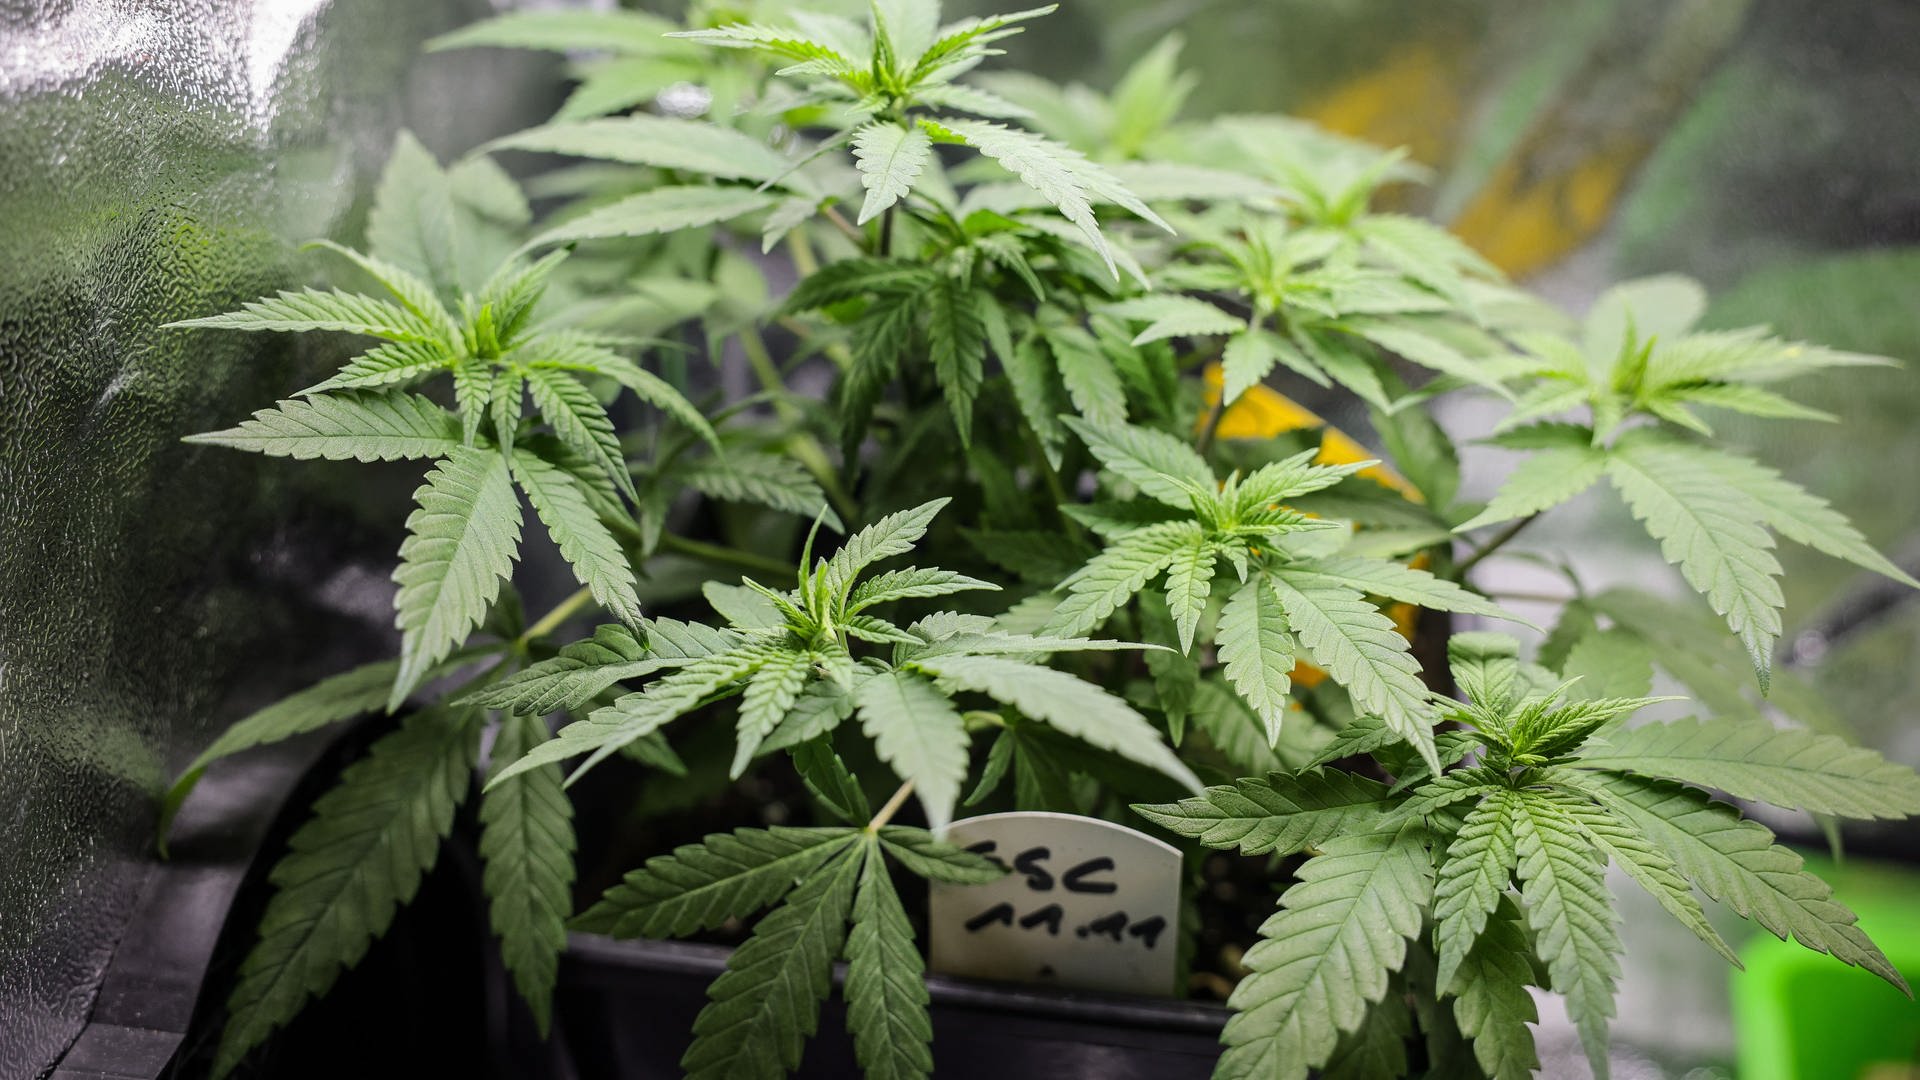 Polizei und Behörden: Cannabis kann aktuell nicht aus legalen Quellen stammen - das hat Folgen